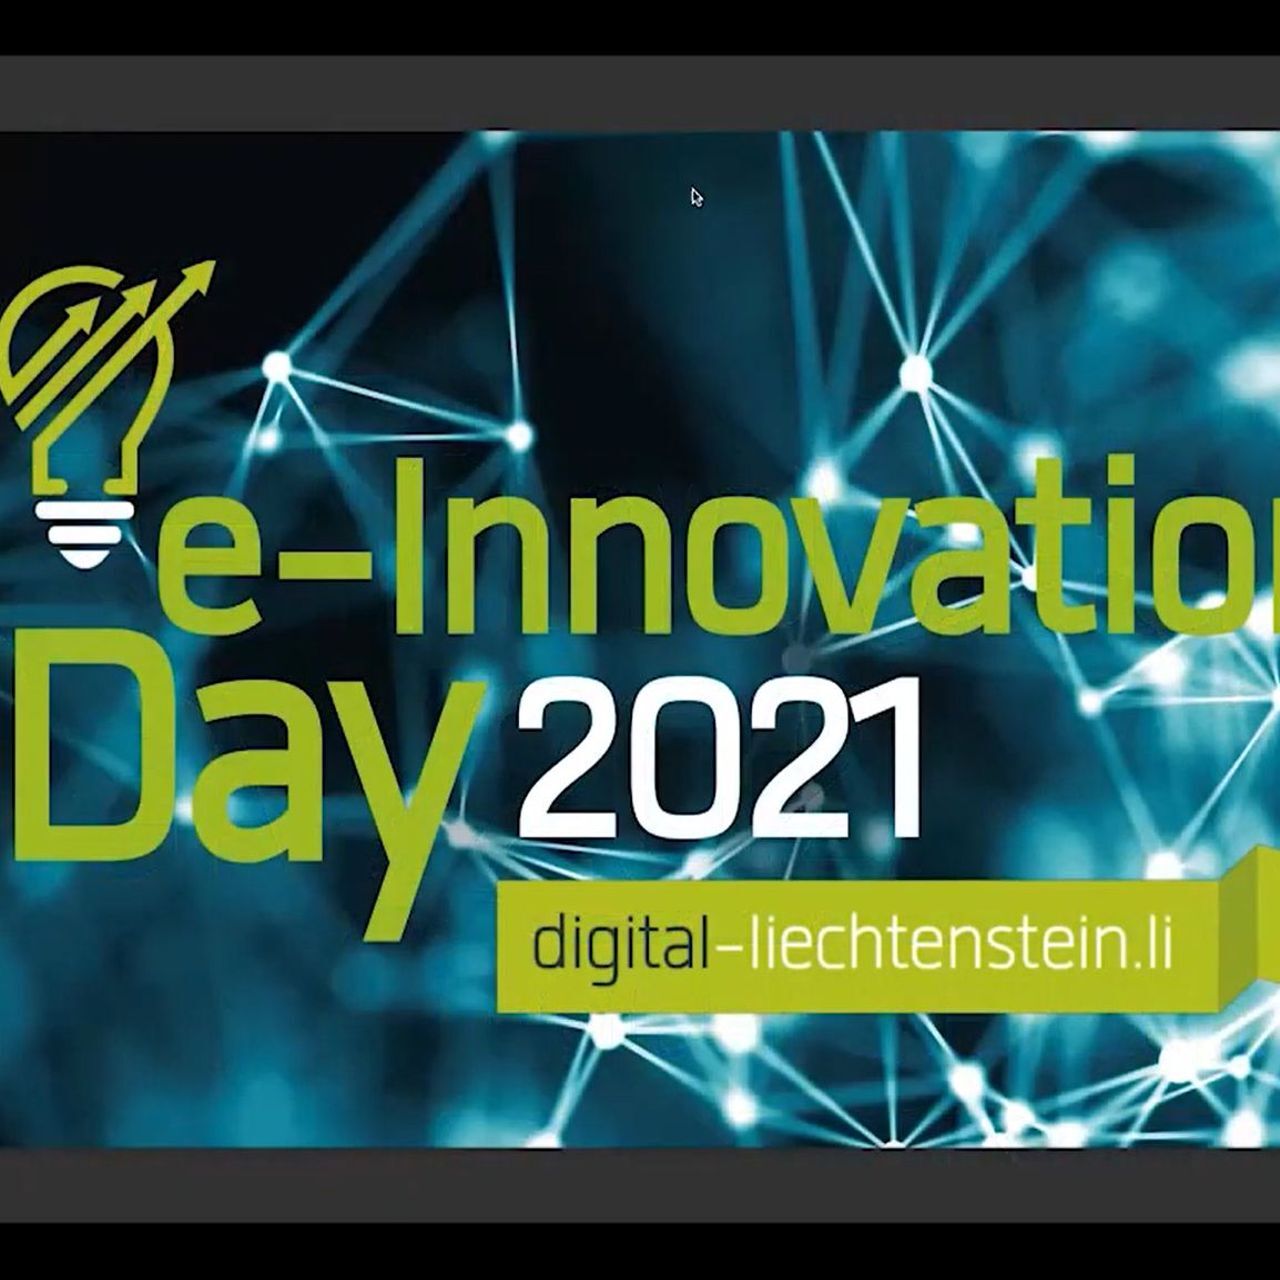 Deň elektronickej inovácie: úvodný rámec webinára „elektronická inovácia“ Lichtenštajnsko 2021